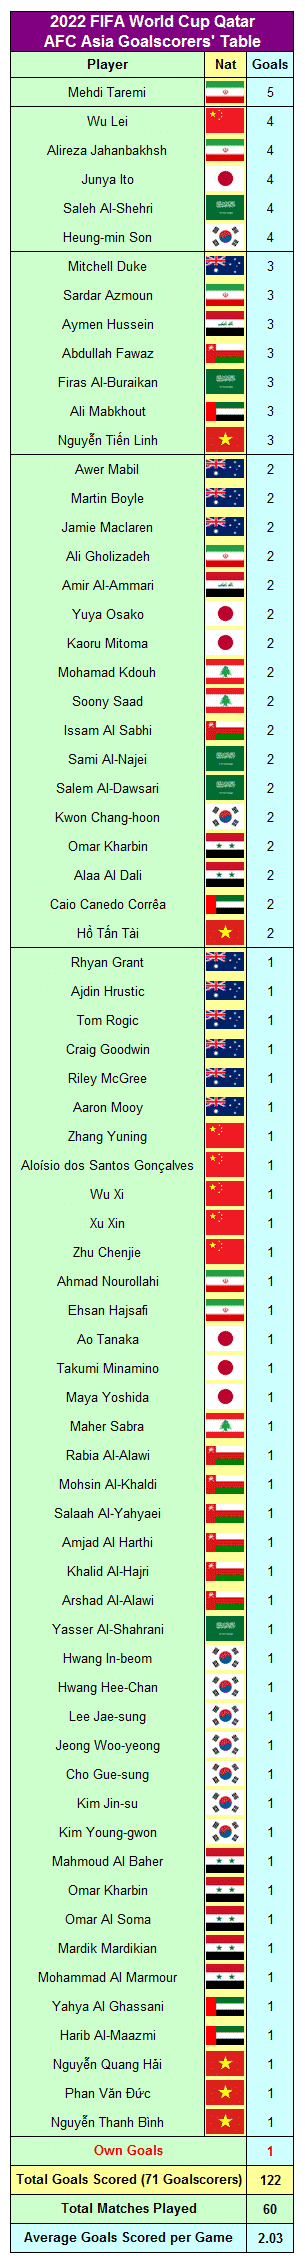 Tabelle der Torschützen der FIFA Fussball-Weltmeisterschaft 2022 Qatr AFC Asia